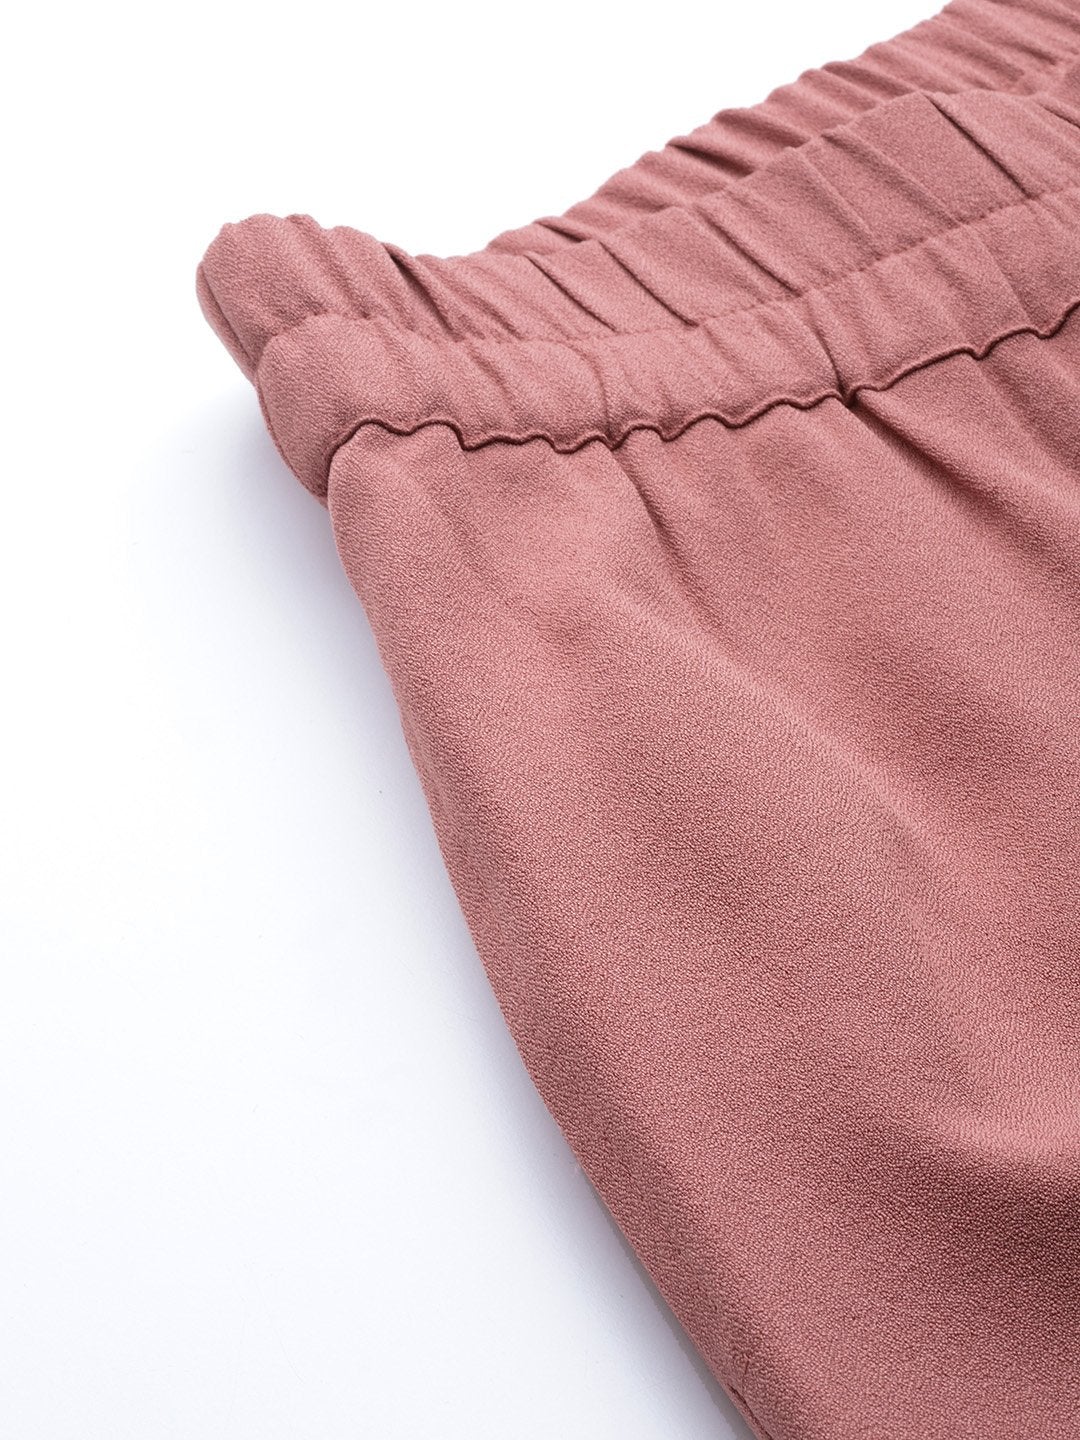 Women's Pink Roll Up Pants - SASSAFRAS